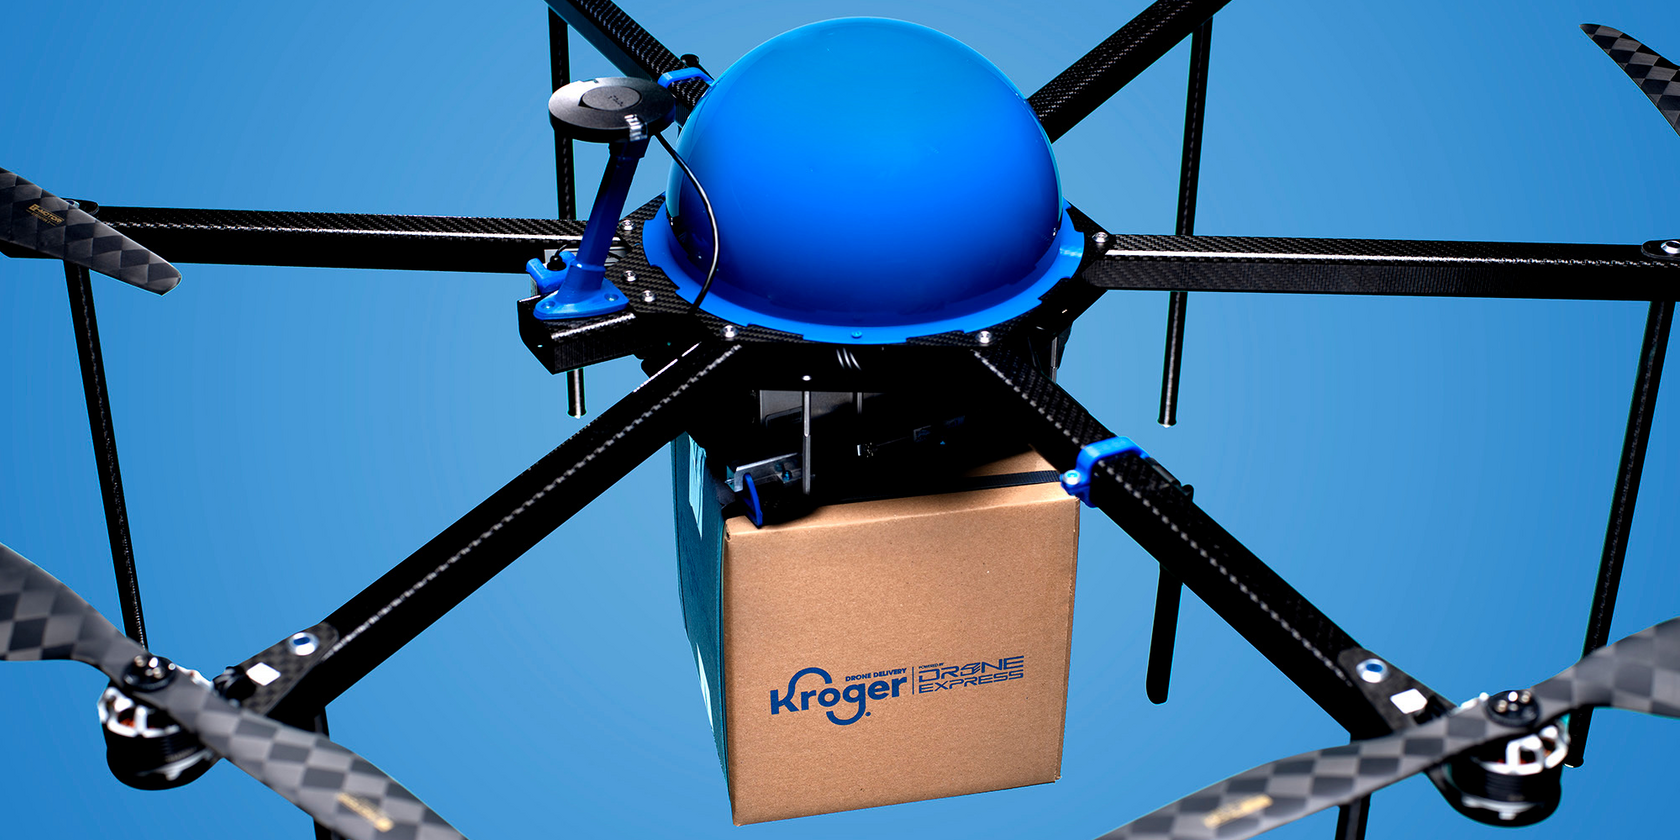 Kroger drone deliveries